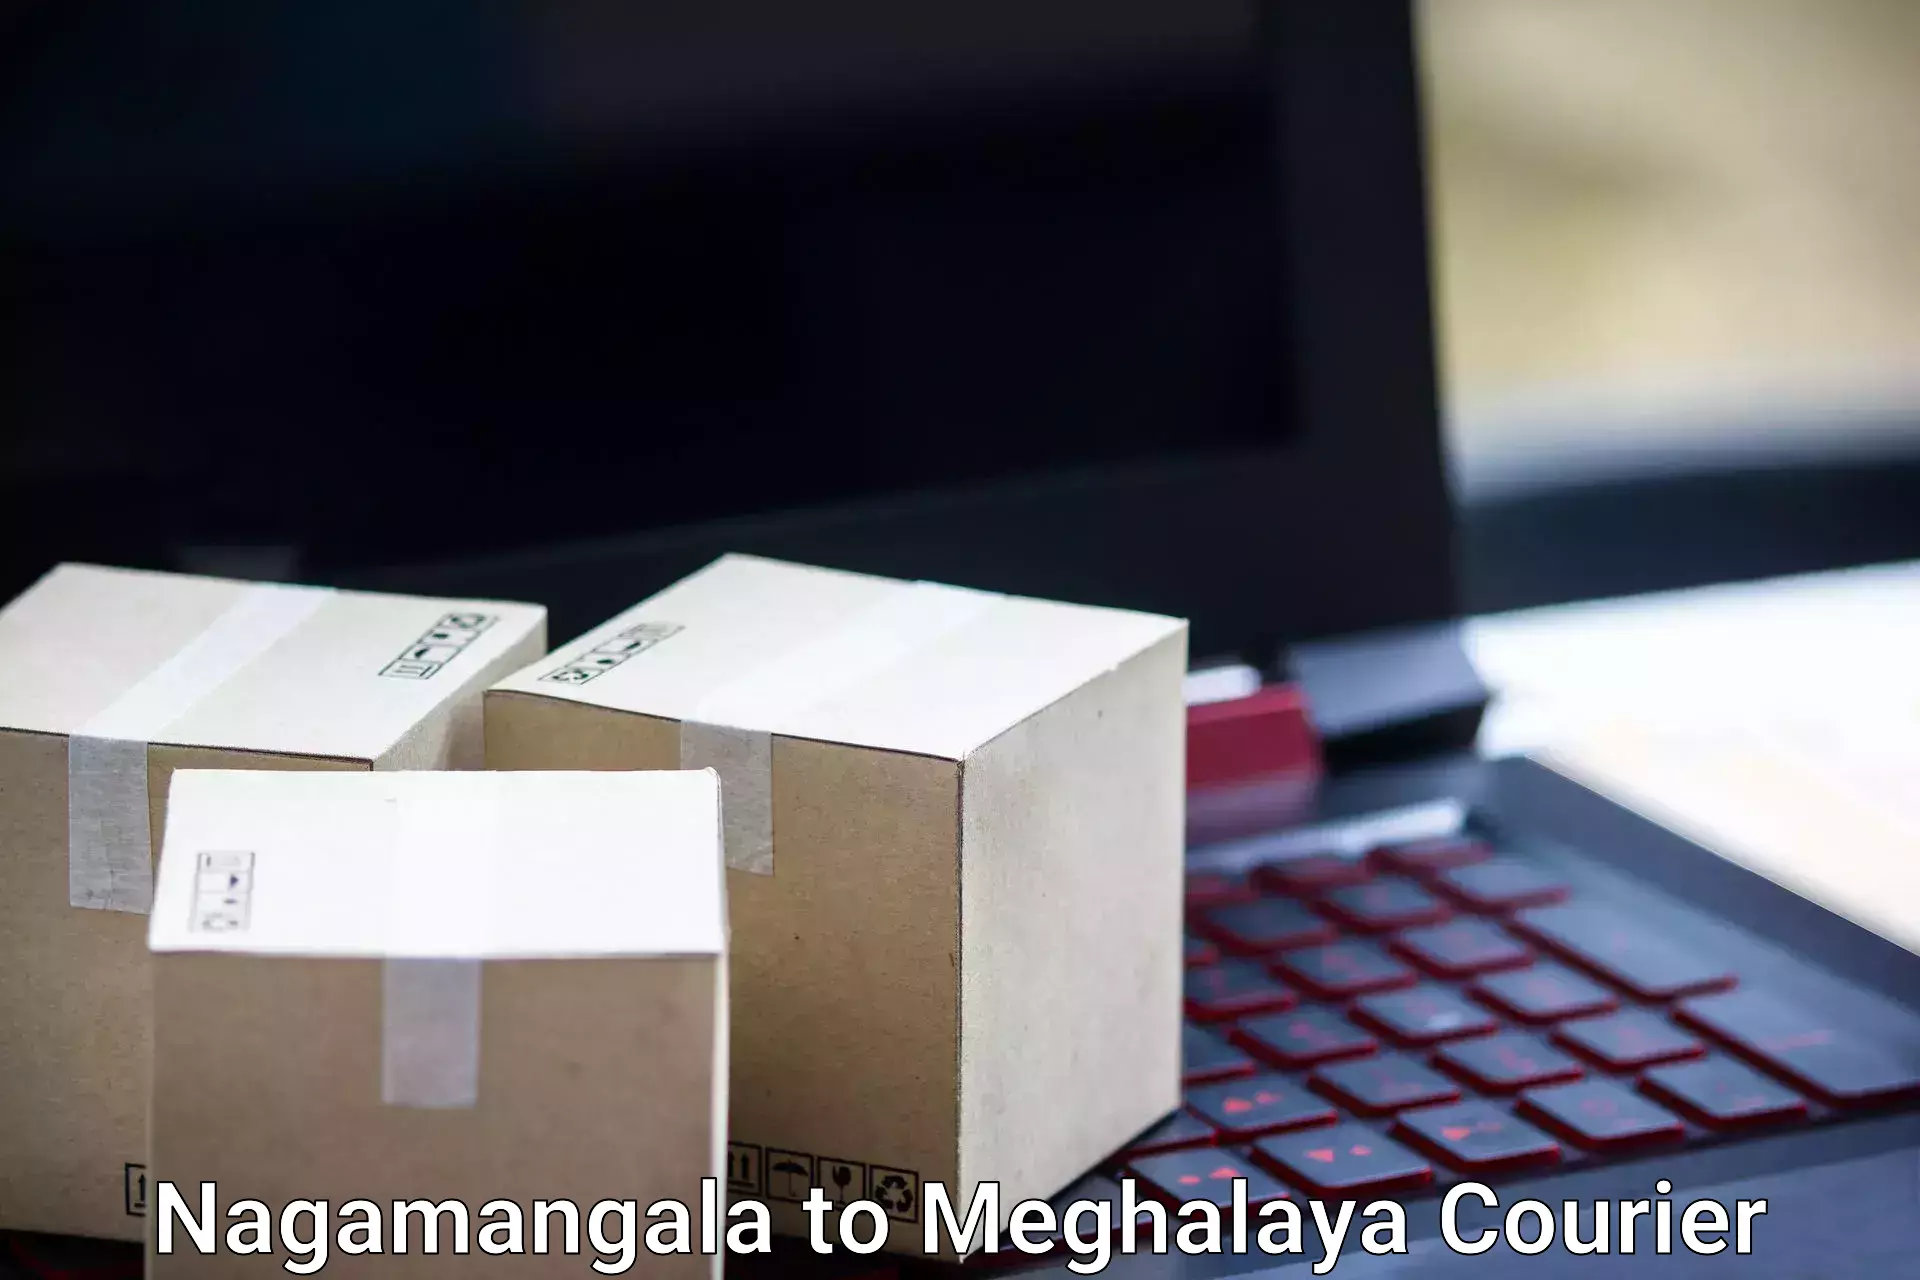 Personal effects shipping Nagamangala to Meghalaya